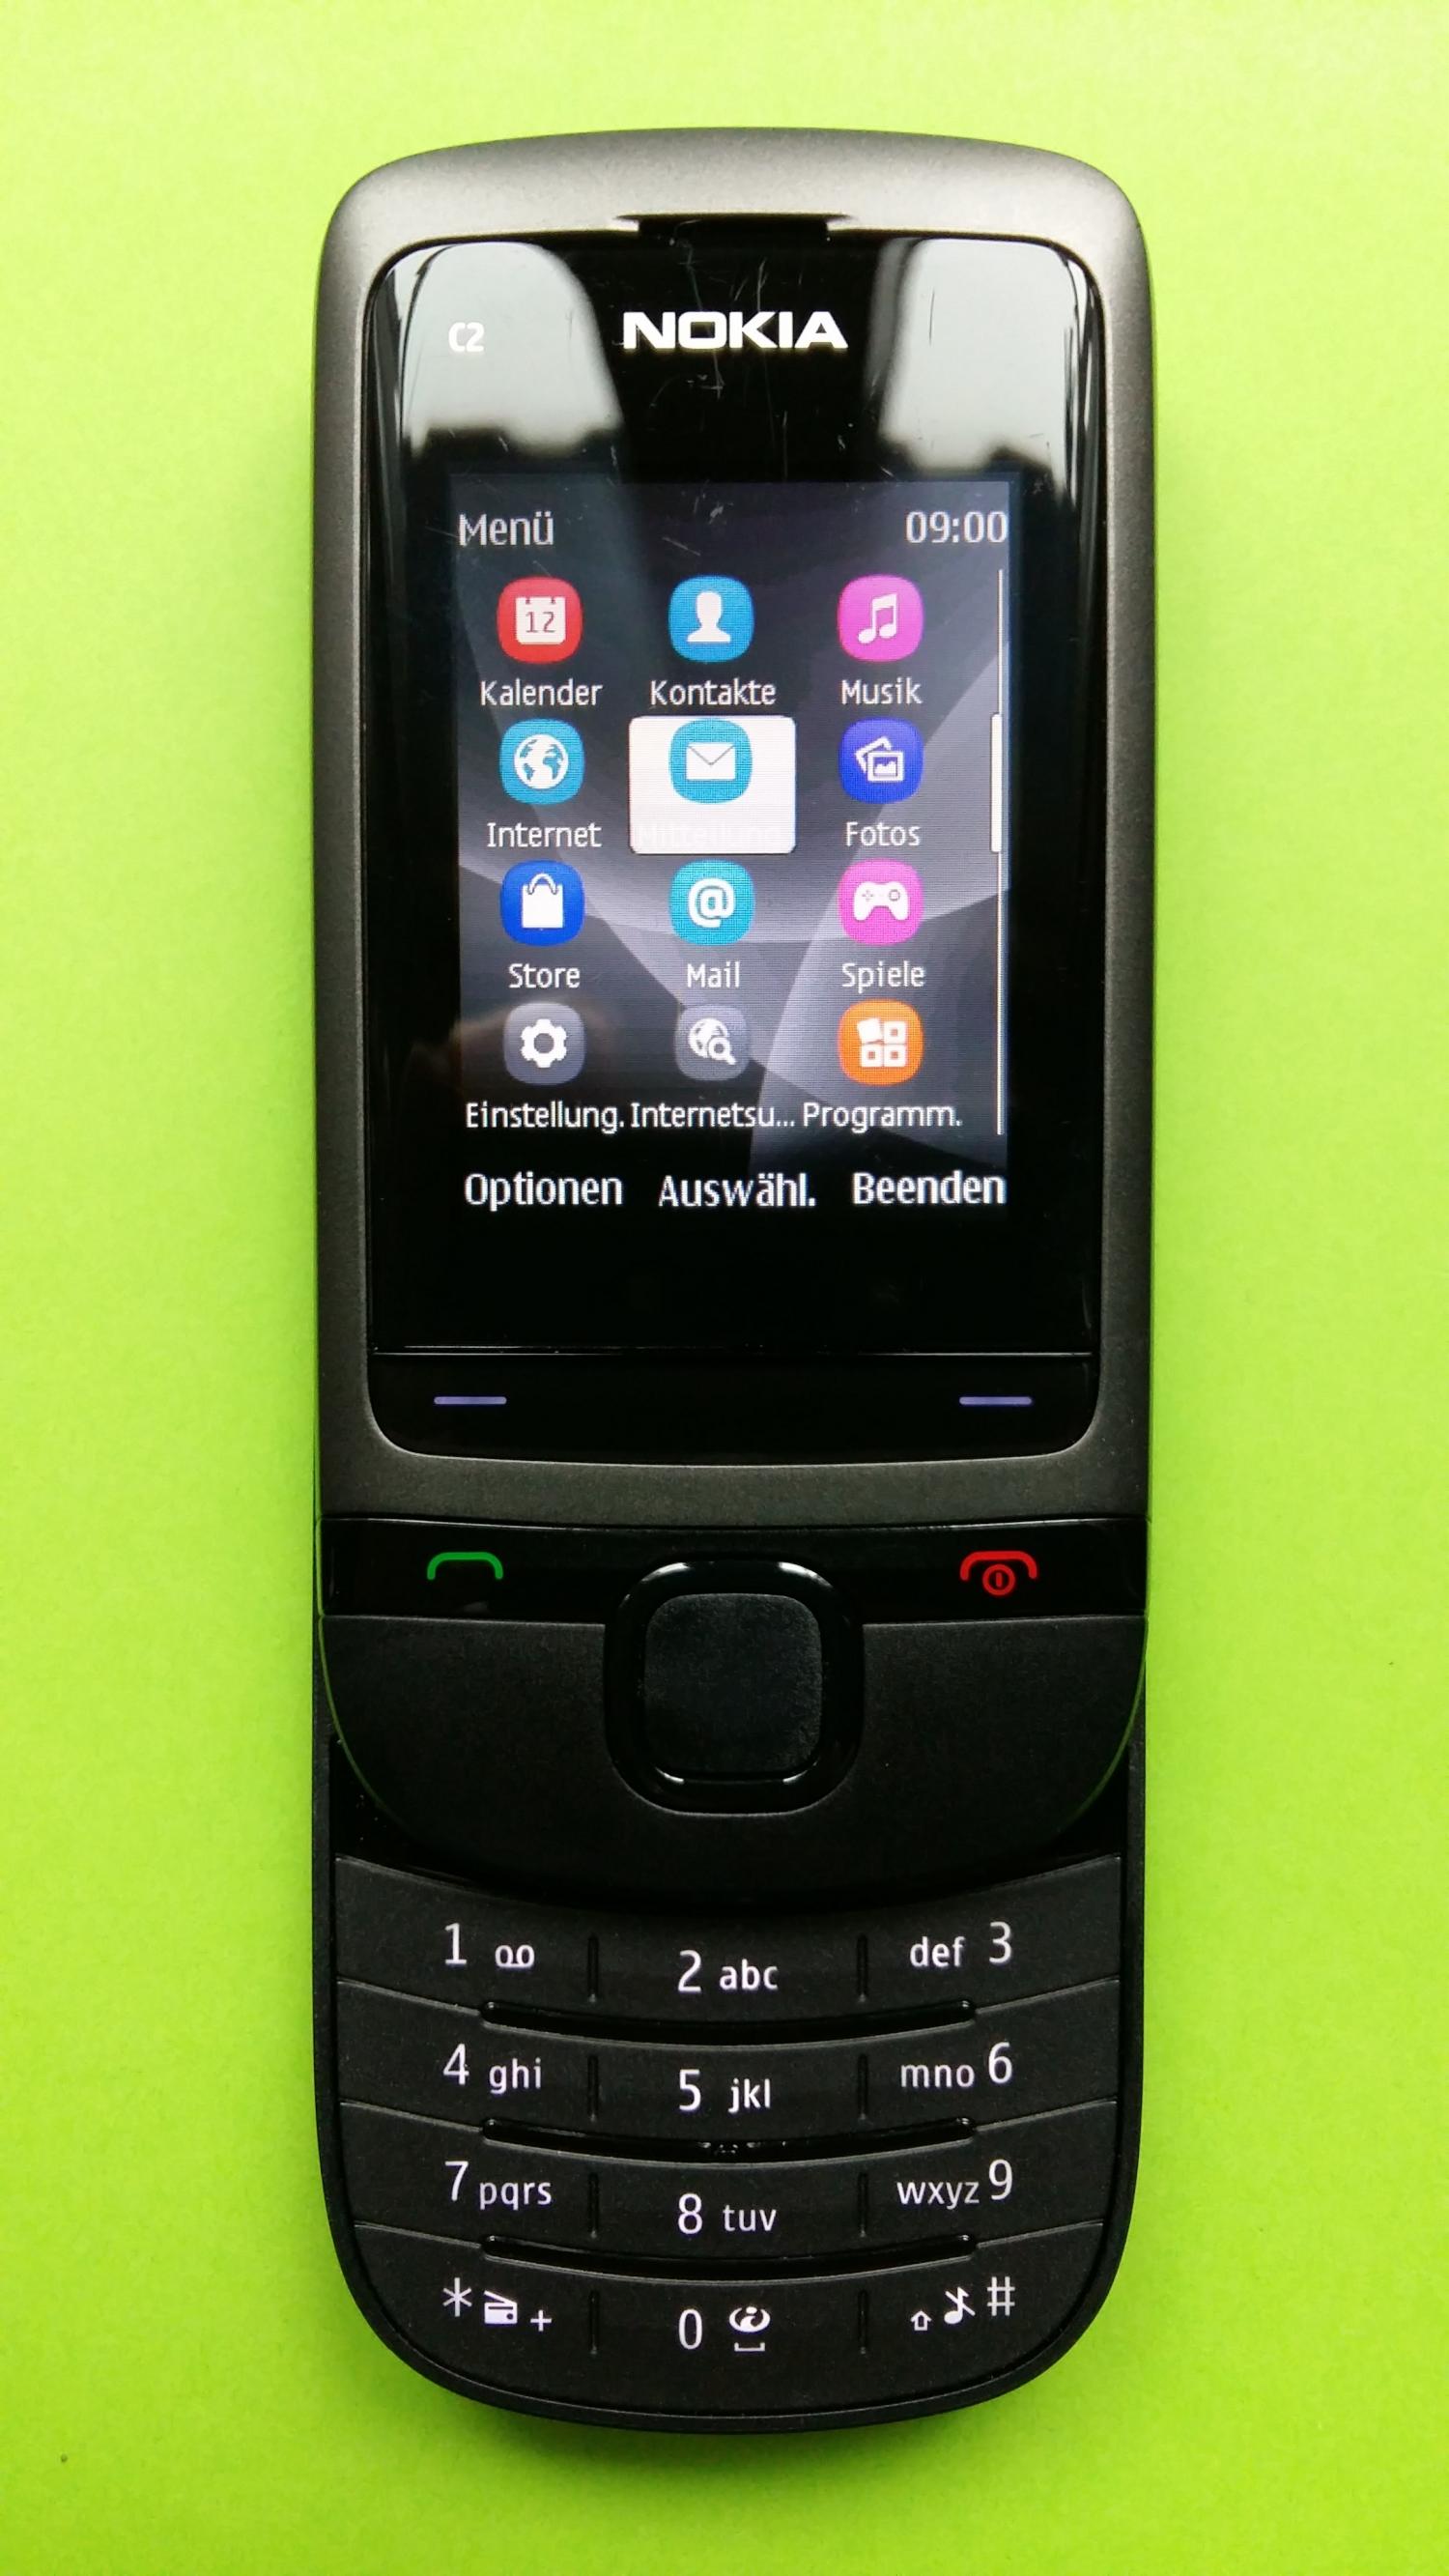 image-7308777-Nokia C2-05 (2)2.jpg